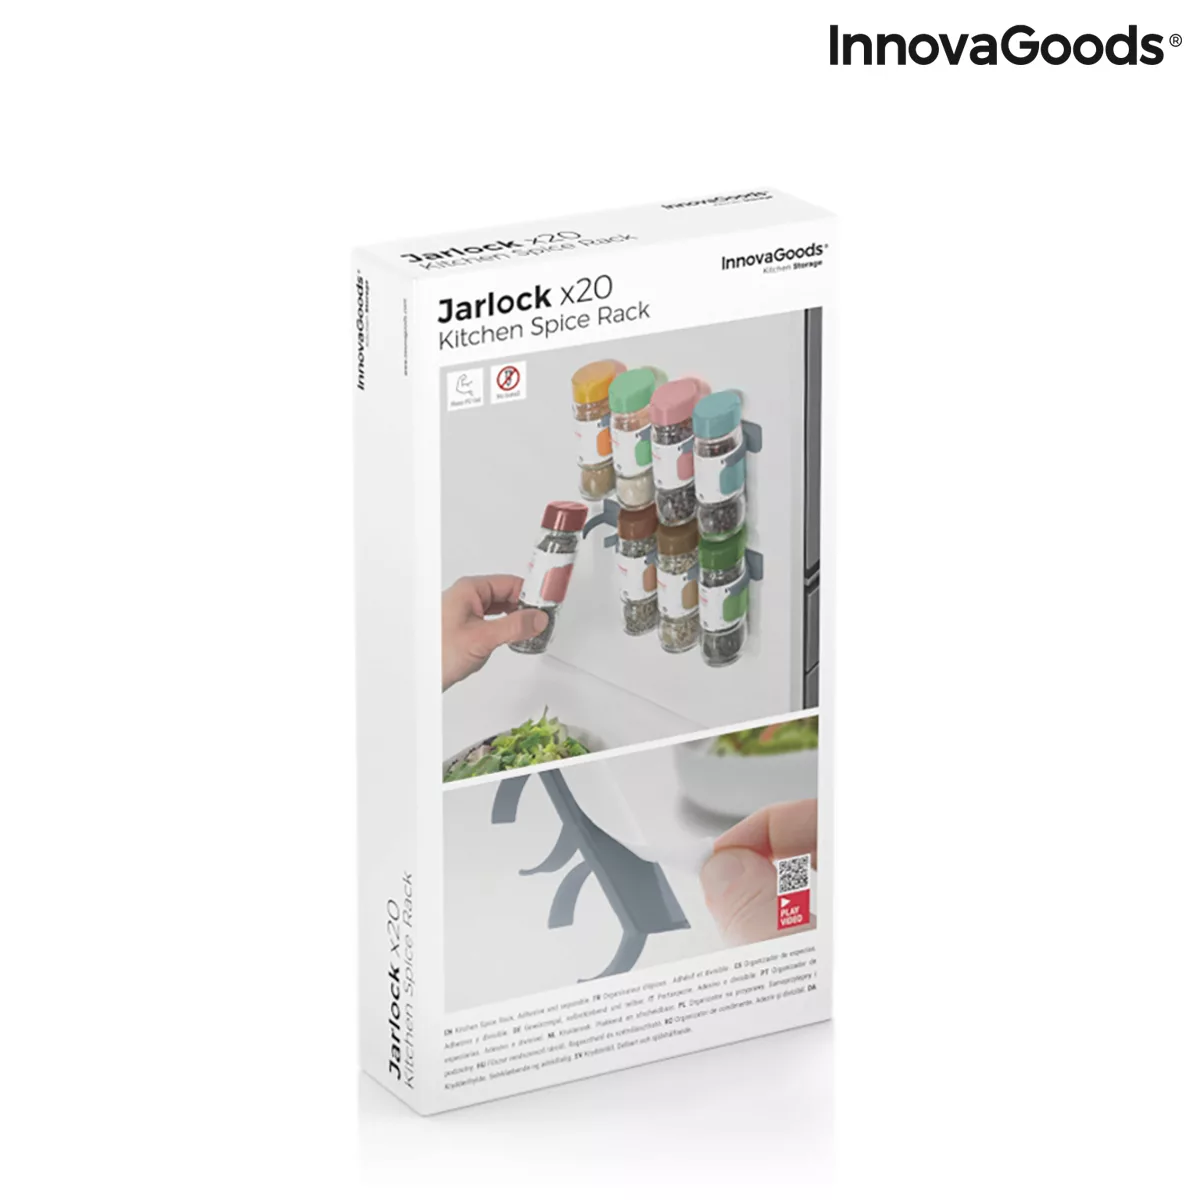 Selbstklebendes Und Aufteilbares Gewürzregal Jarlock X20 Innovagoods günstig online kaufen